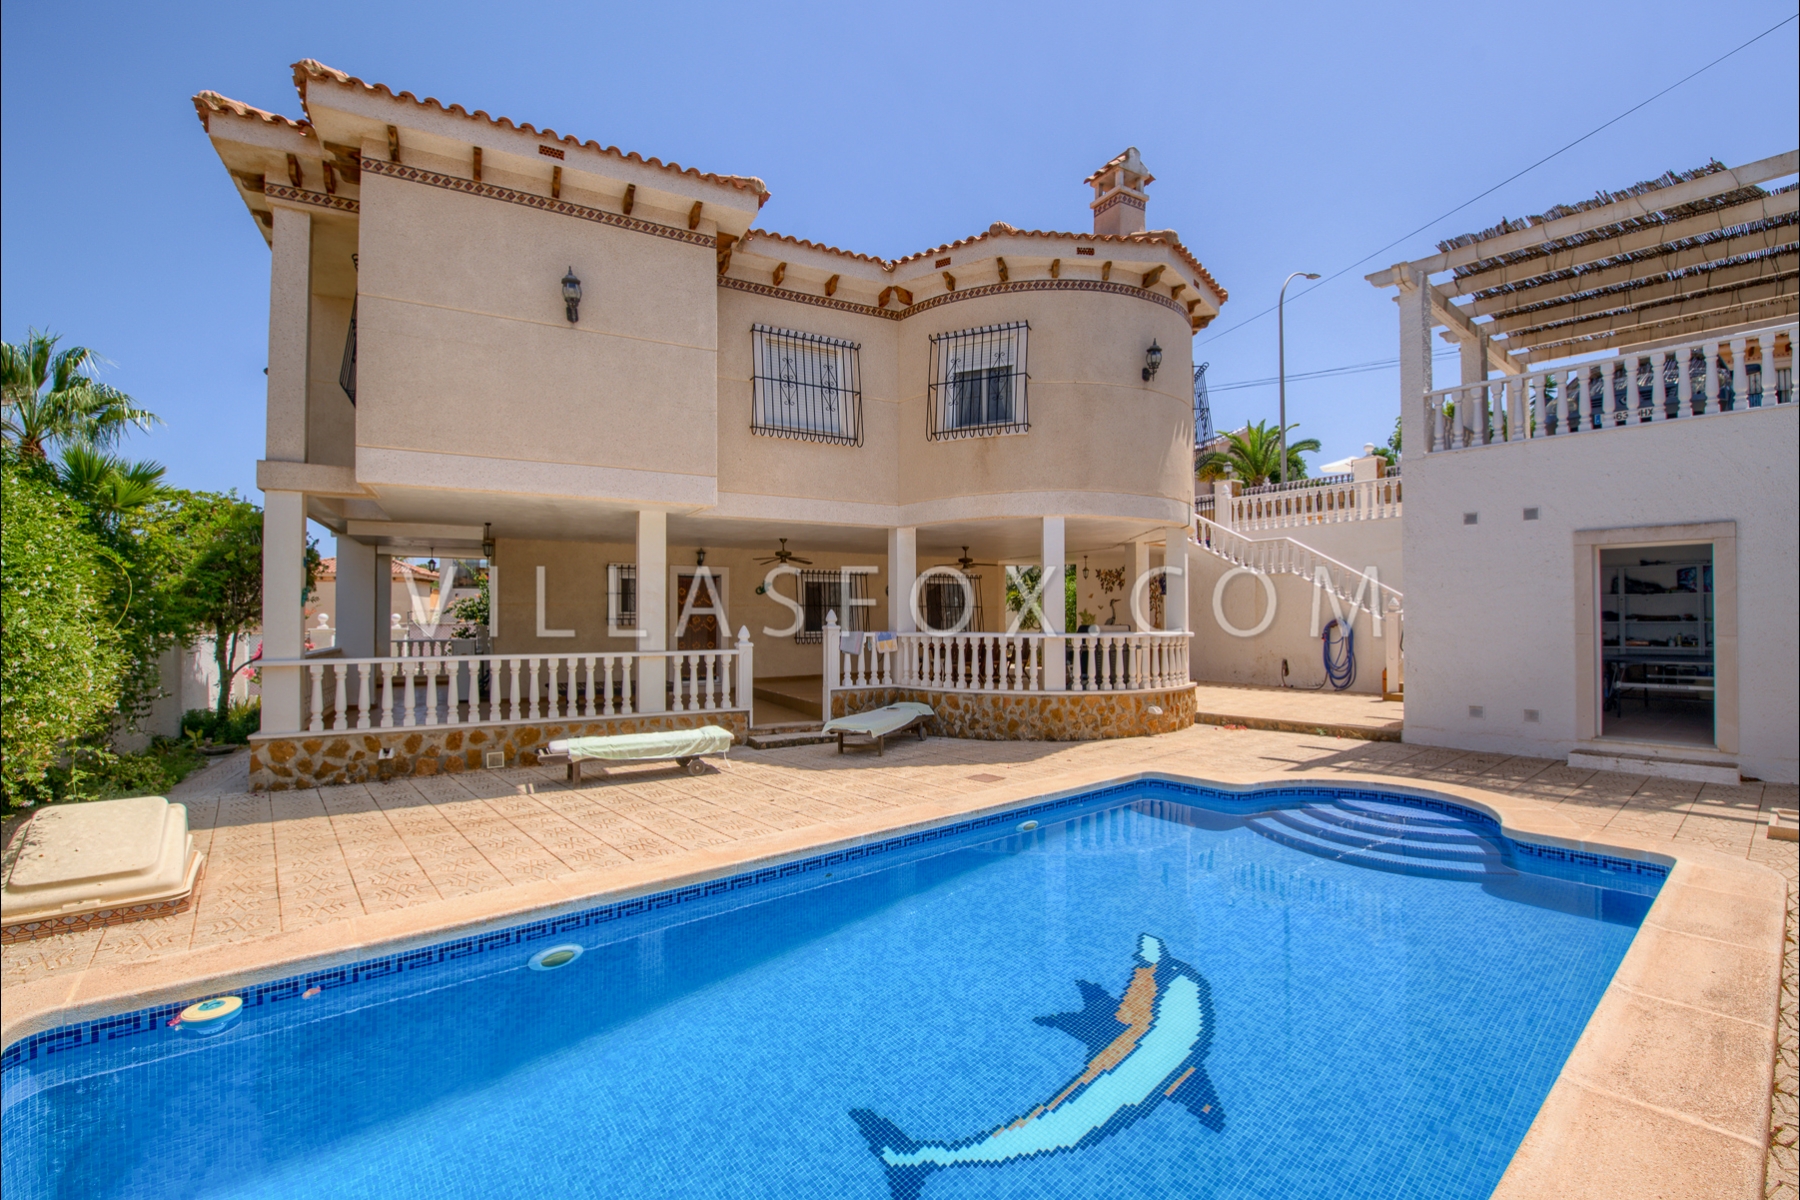 Villasmaría luksusvilla med gæstelejlighed, spillelokale og privat pool!